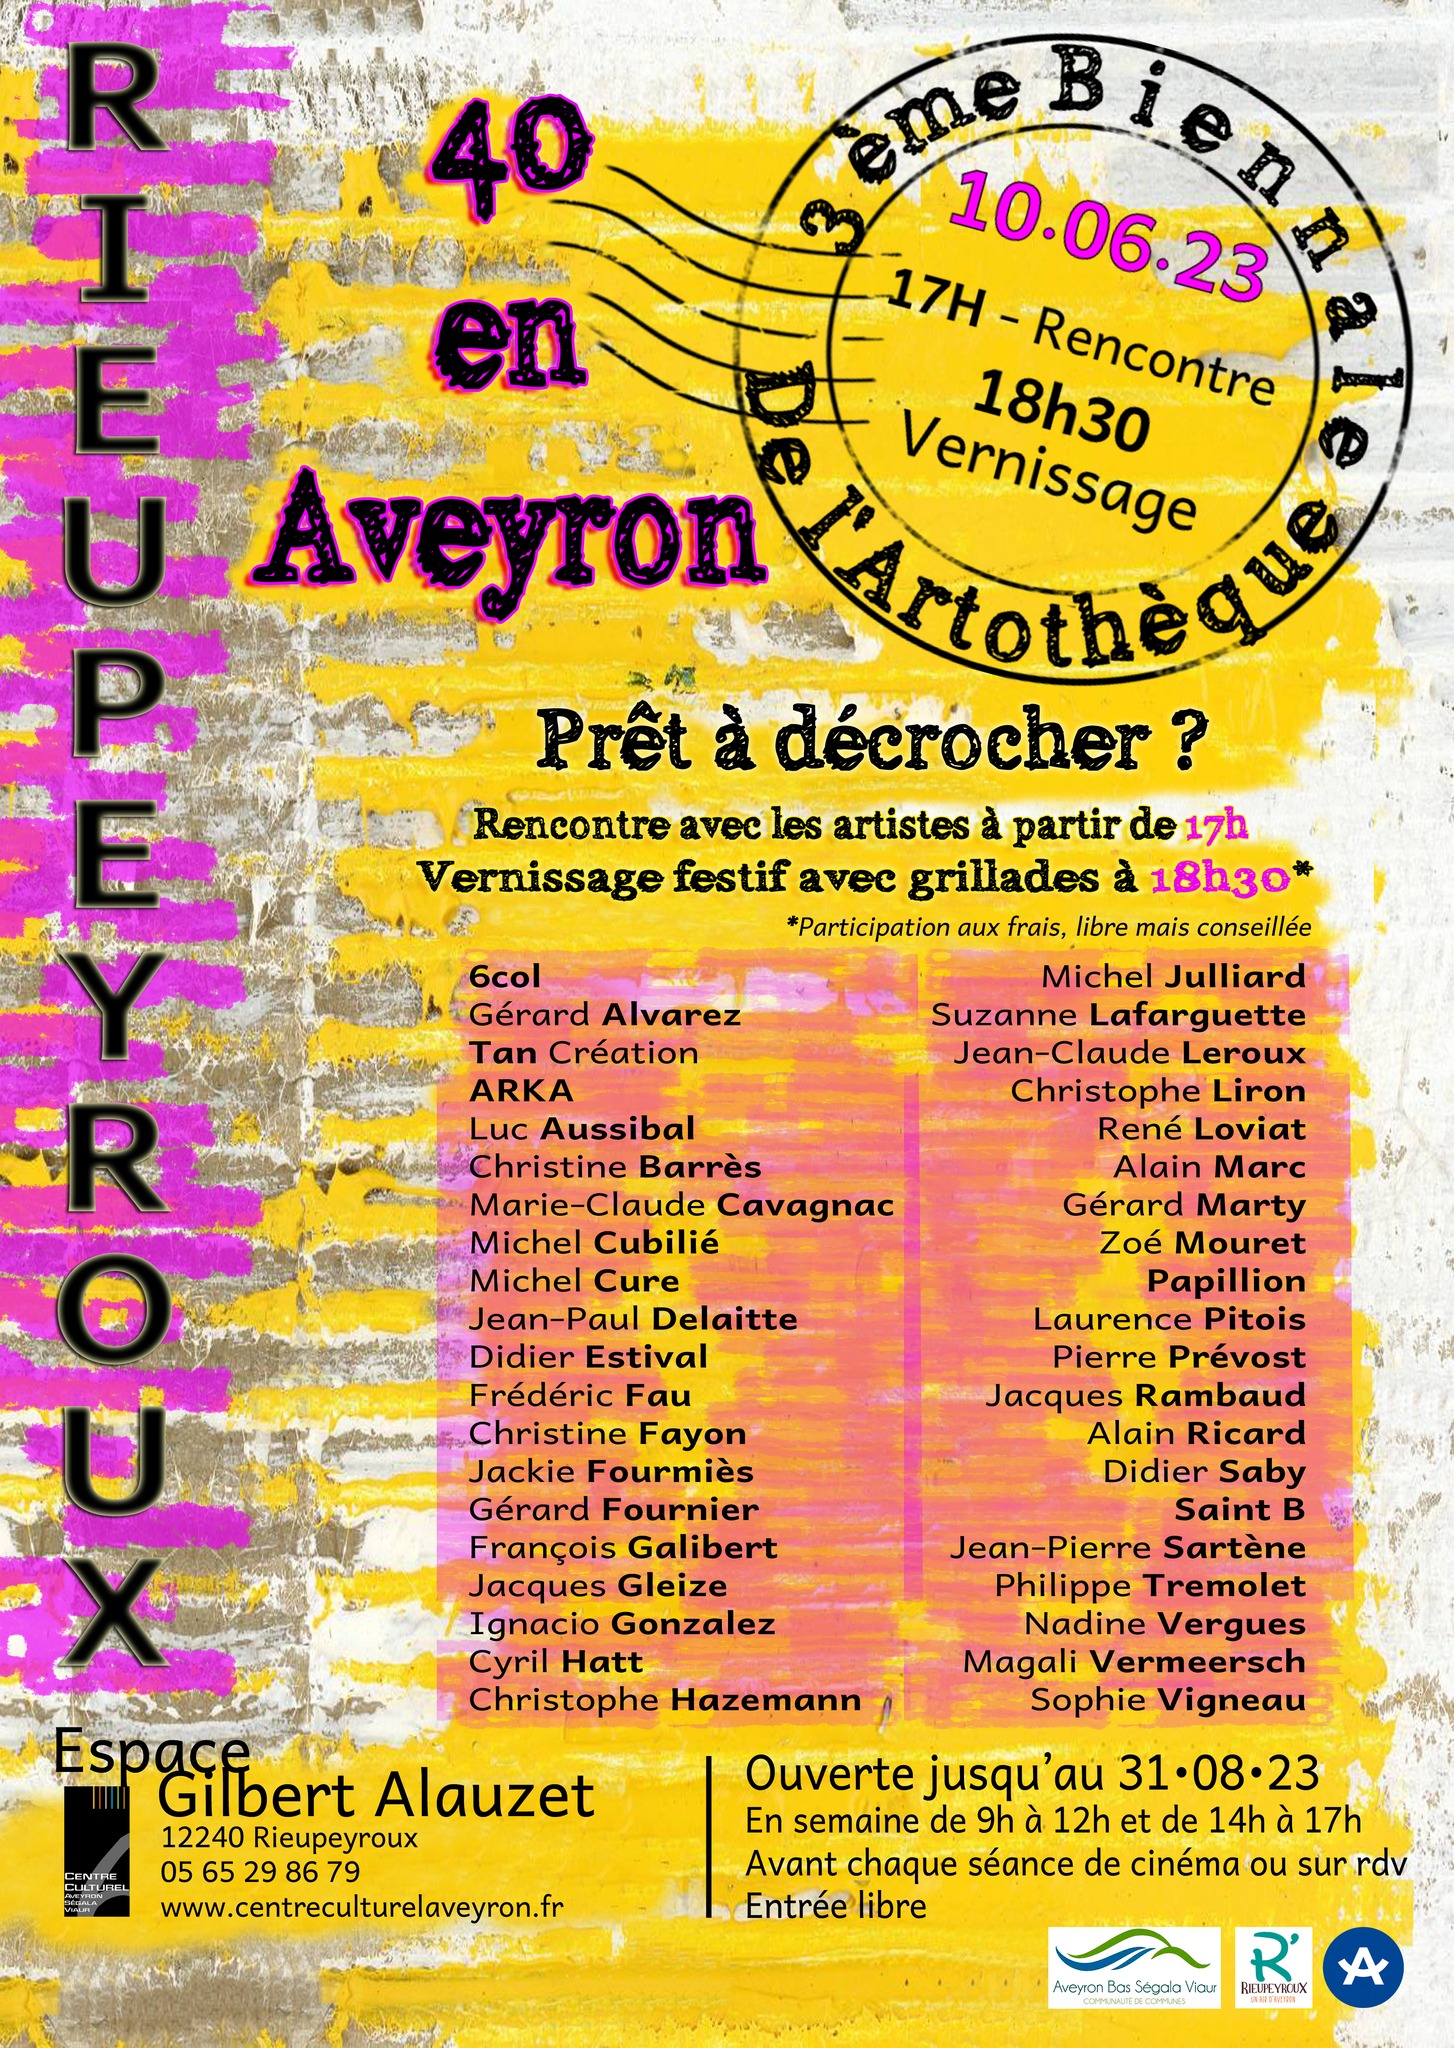 rencontre artistiques en Occitanie, biennale arththèque Aveyron